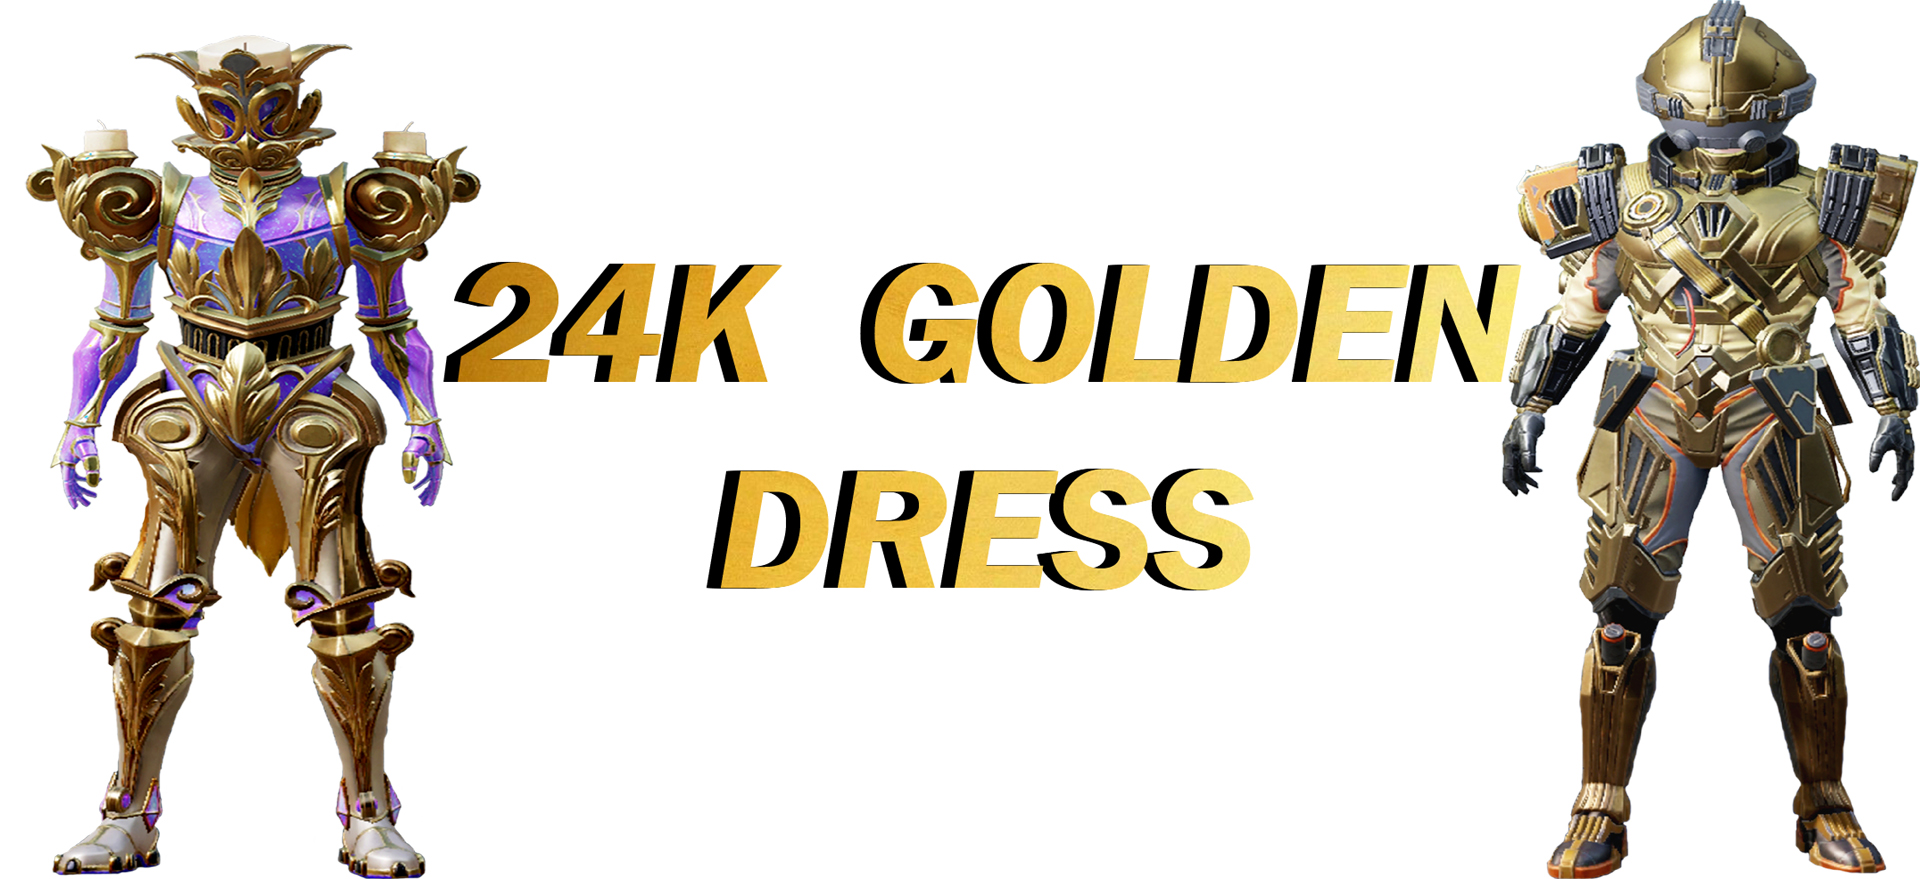 Golden dress,Golden dress images,Golden dress Hd wallpaper ,24K Golden dress wallpaper